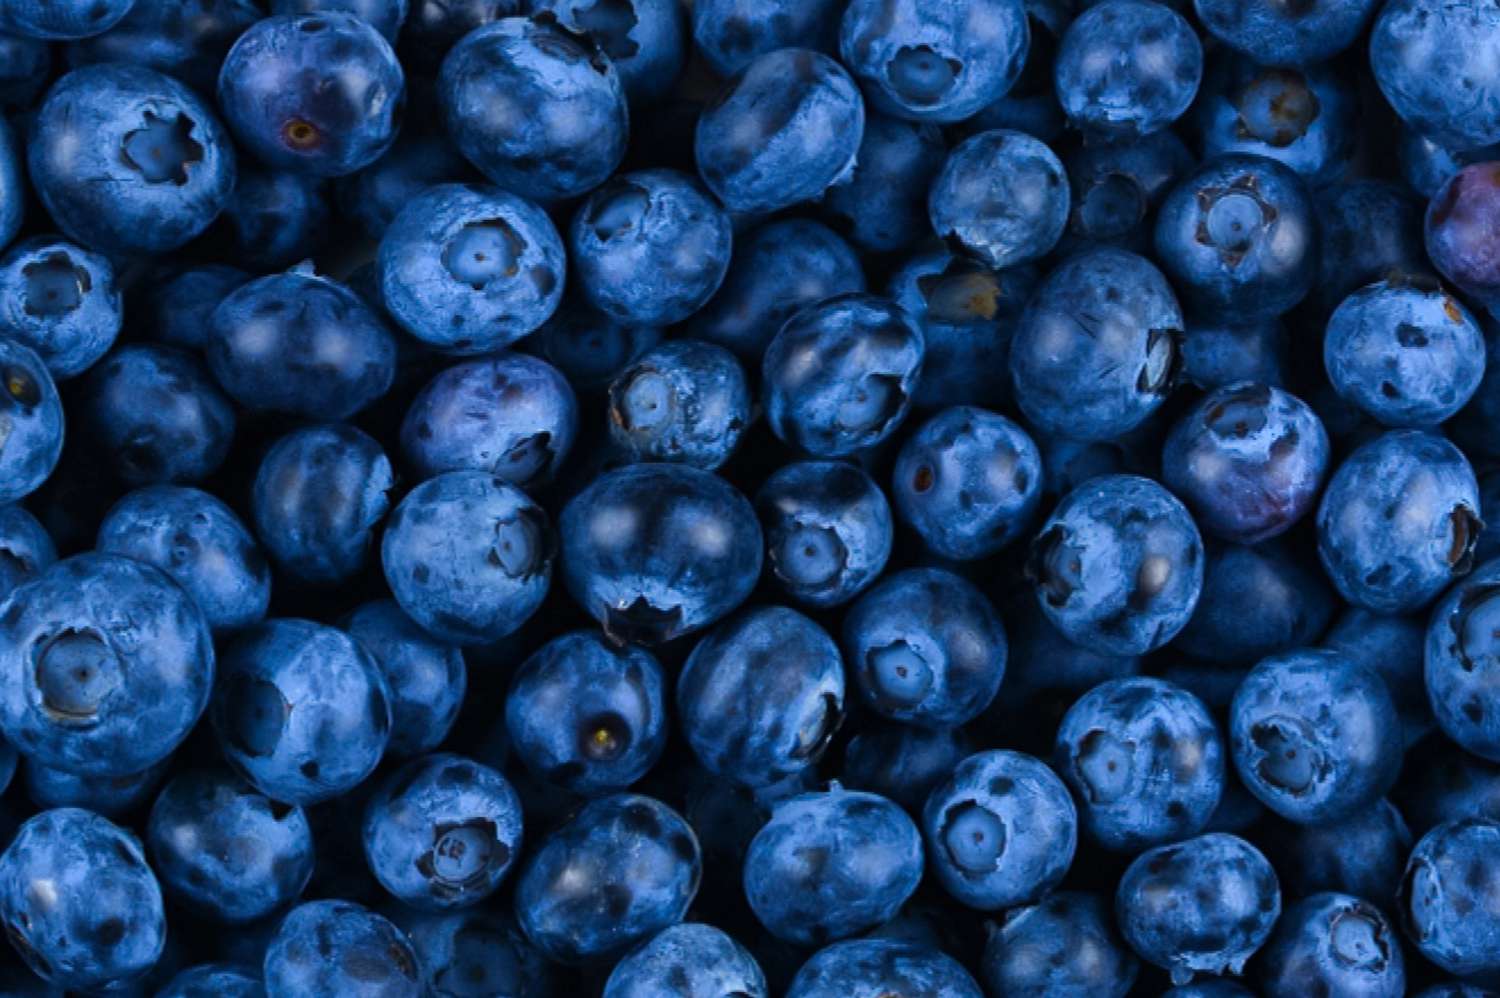 blueberry harvest